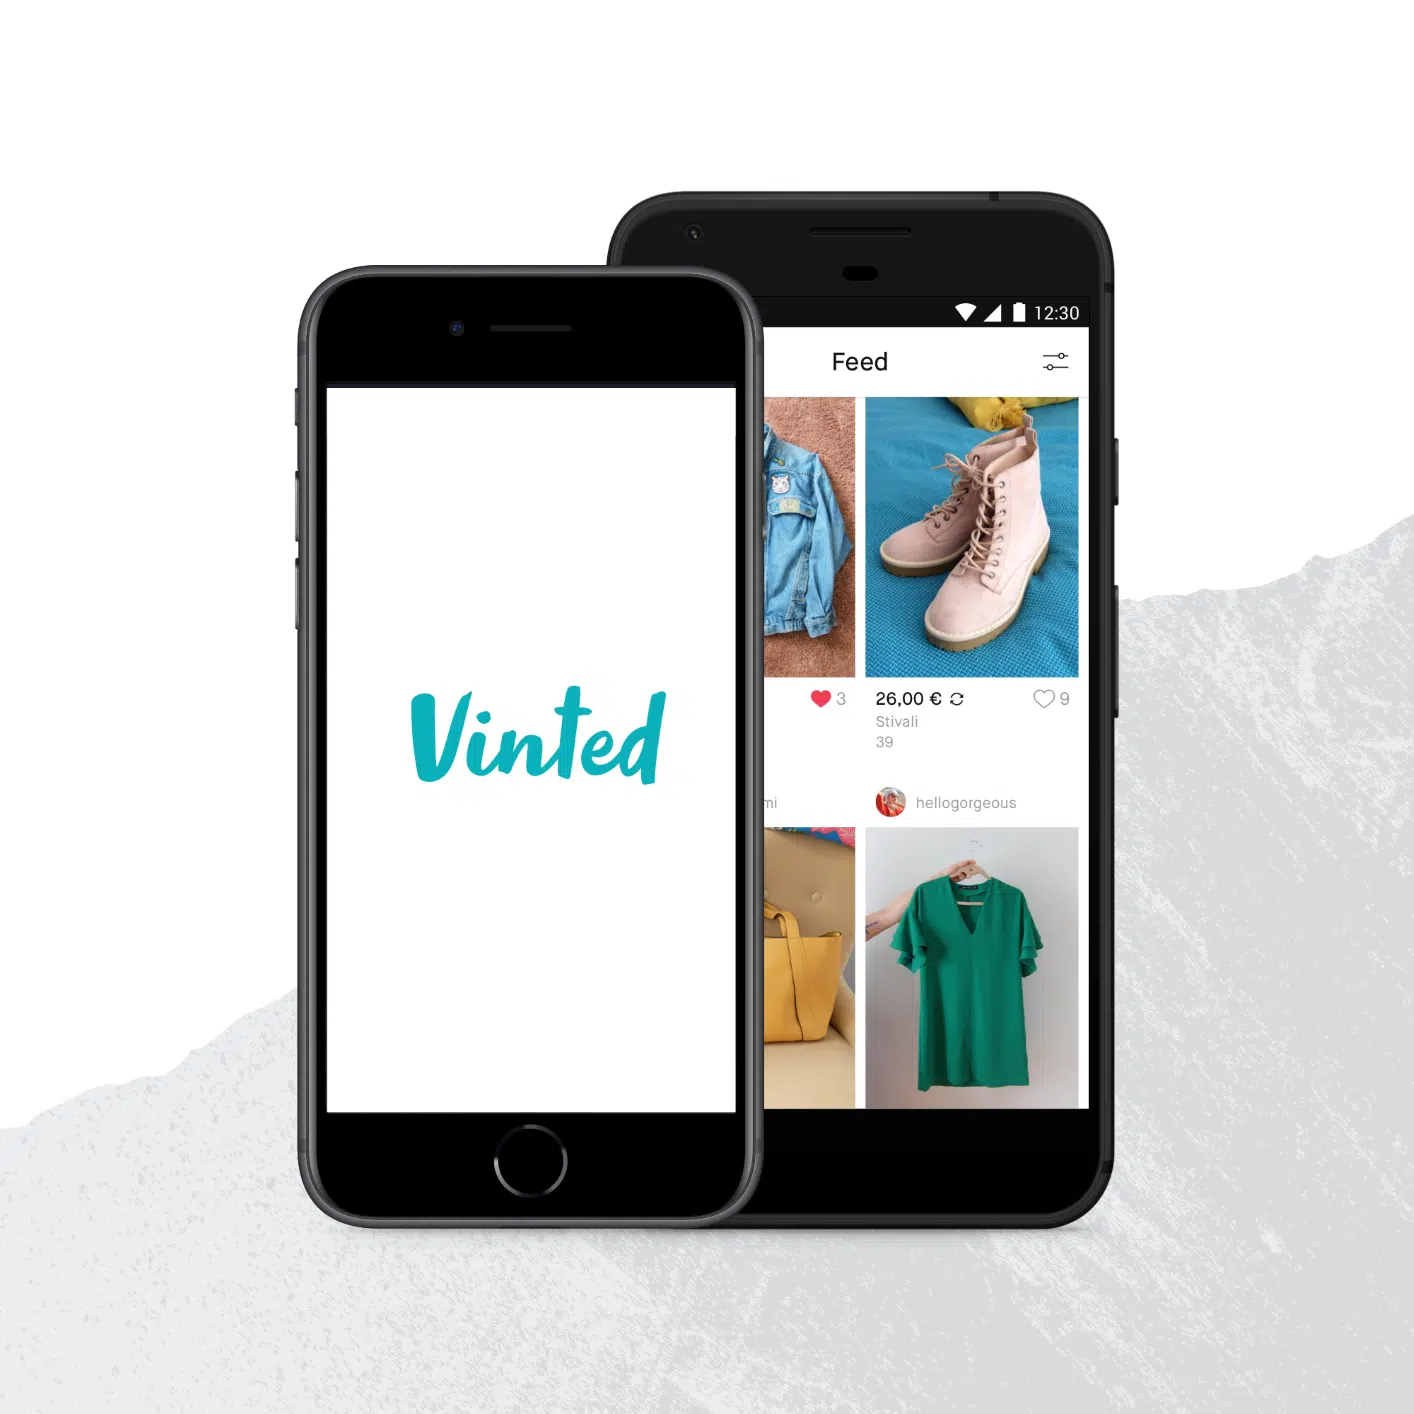 Móvil con la aplicación de Vinted abierta, donde puede comprar y vender ropa.